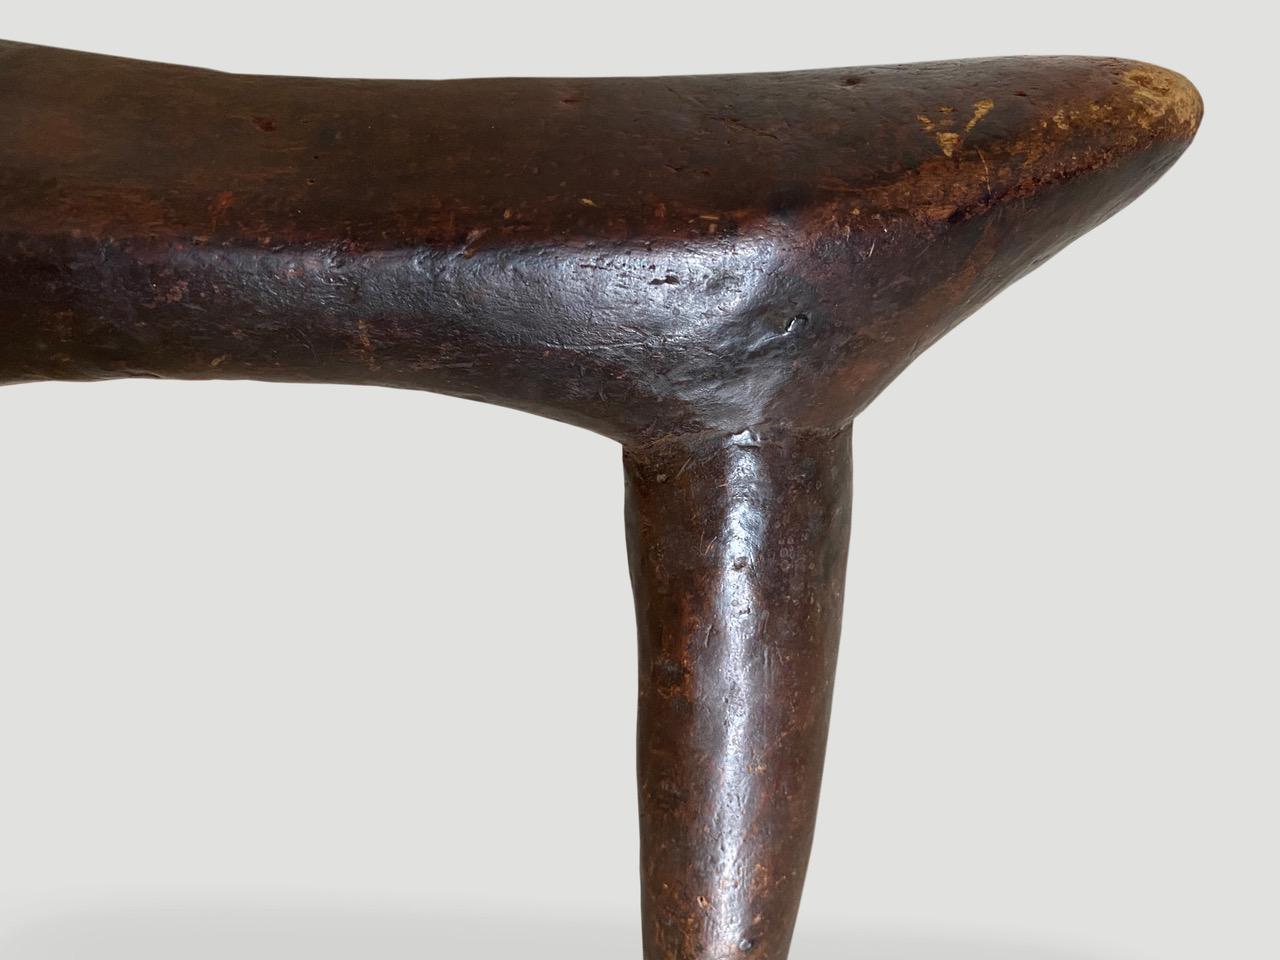 Magnifique appui-tête en bois, de qualité musée. Patine étonnante sur cette pièce d'art rare du Soudan. Sculpté à la main à partir d'une seule pièce de bois par la tribu Dinka. Le pied s'étend jusqu'à neuf pouces de large, vers 1900.

Nous ne